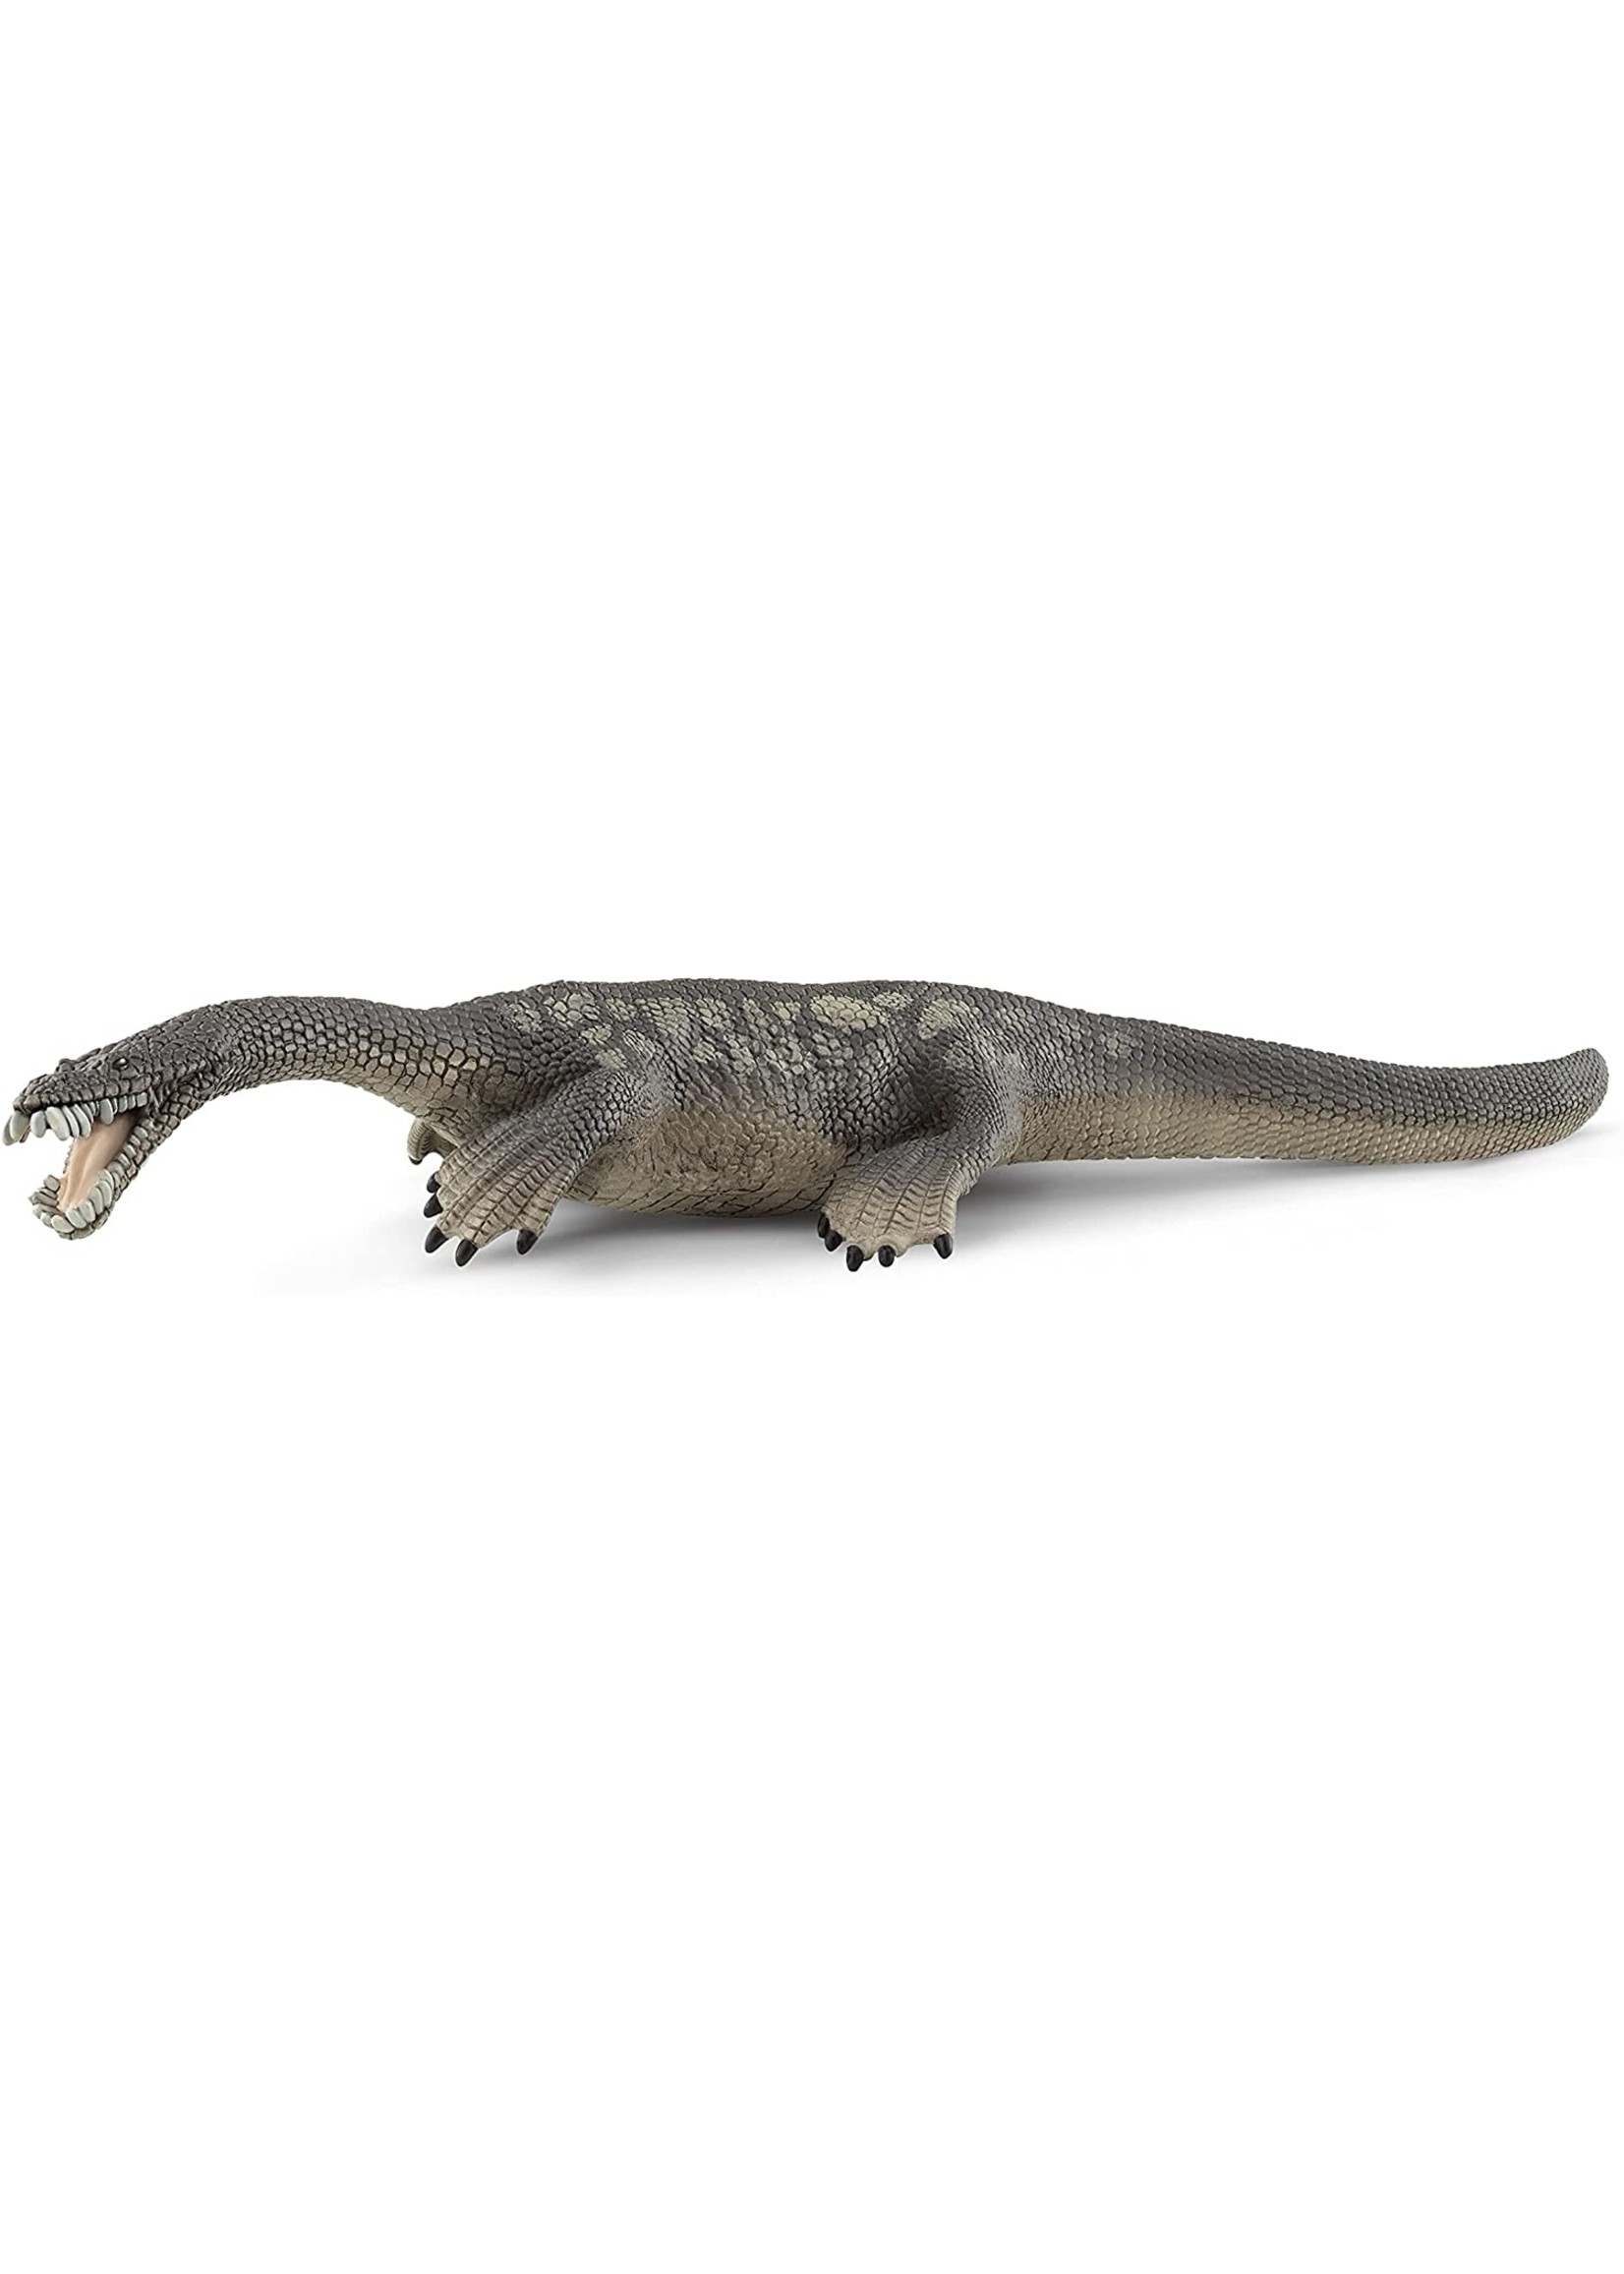 Schleich Nothosaurus